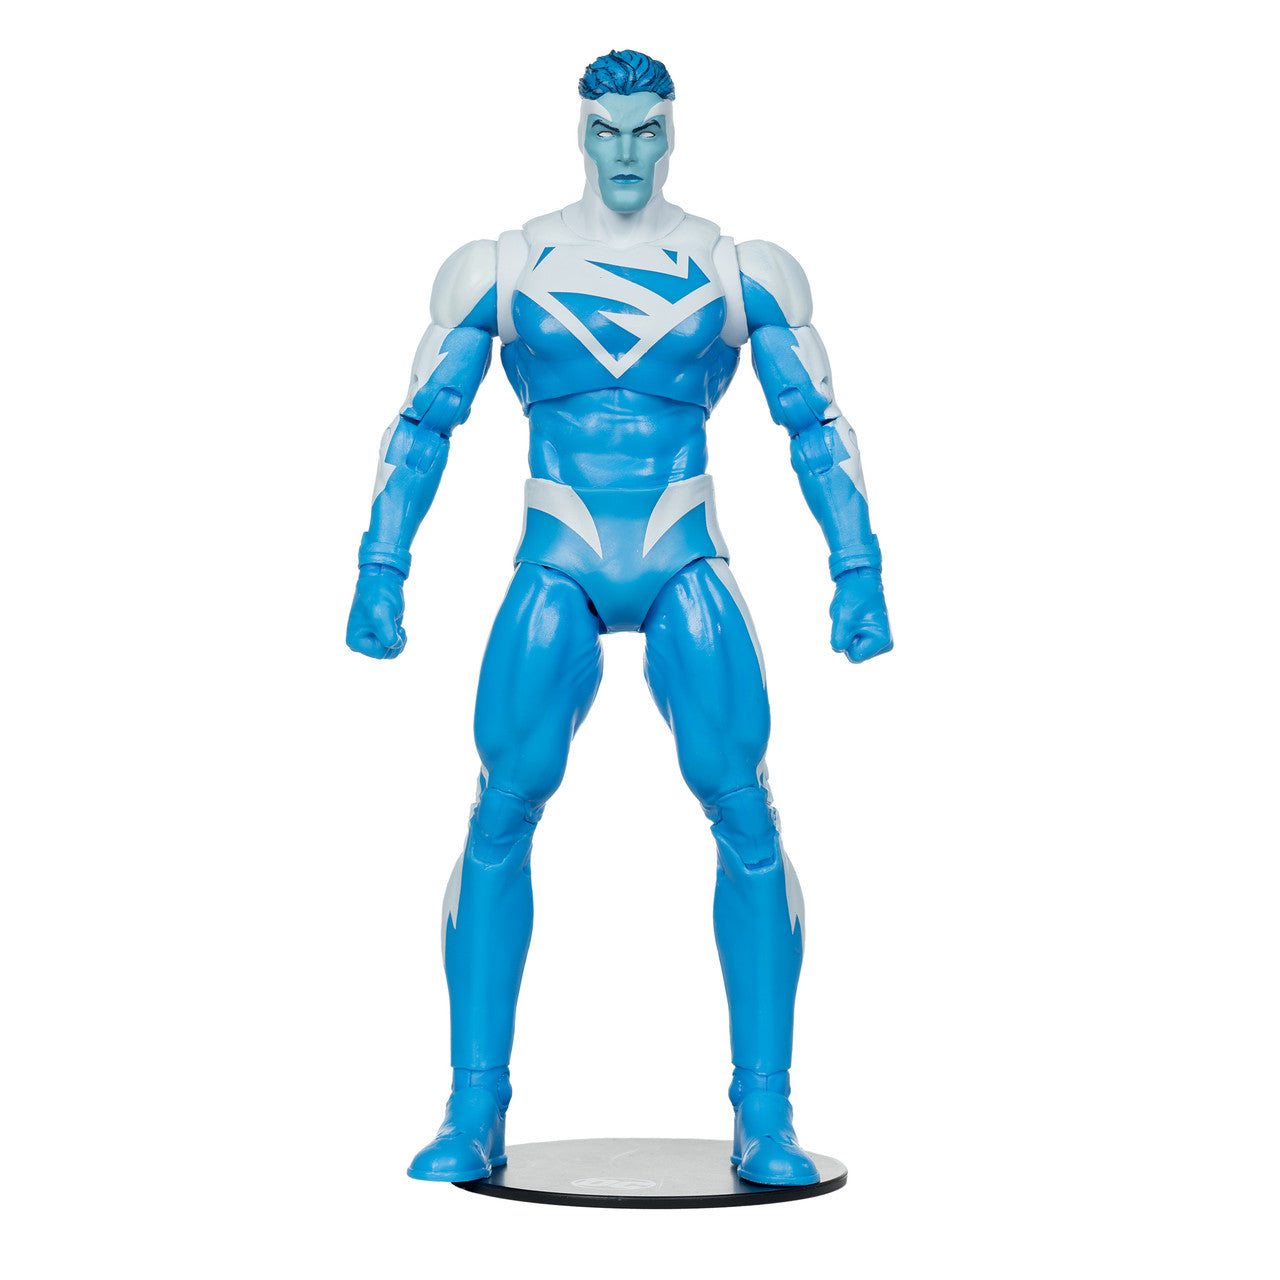 DC Multiverse Superman (JLA) Build-A-Figure